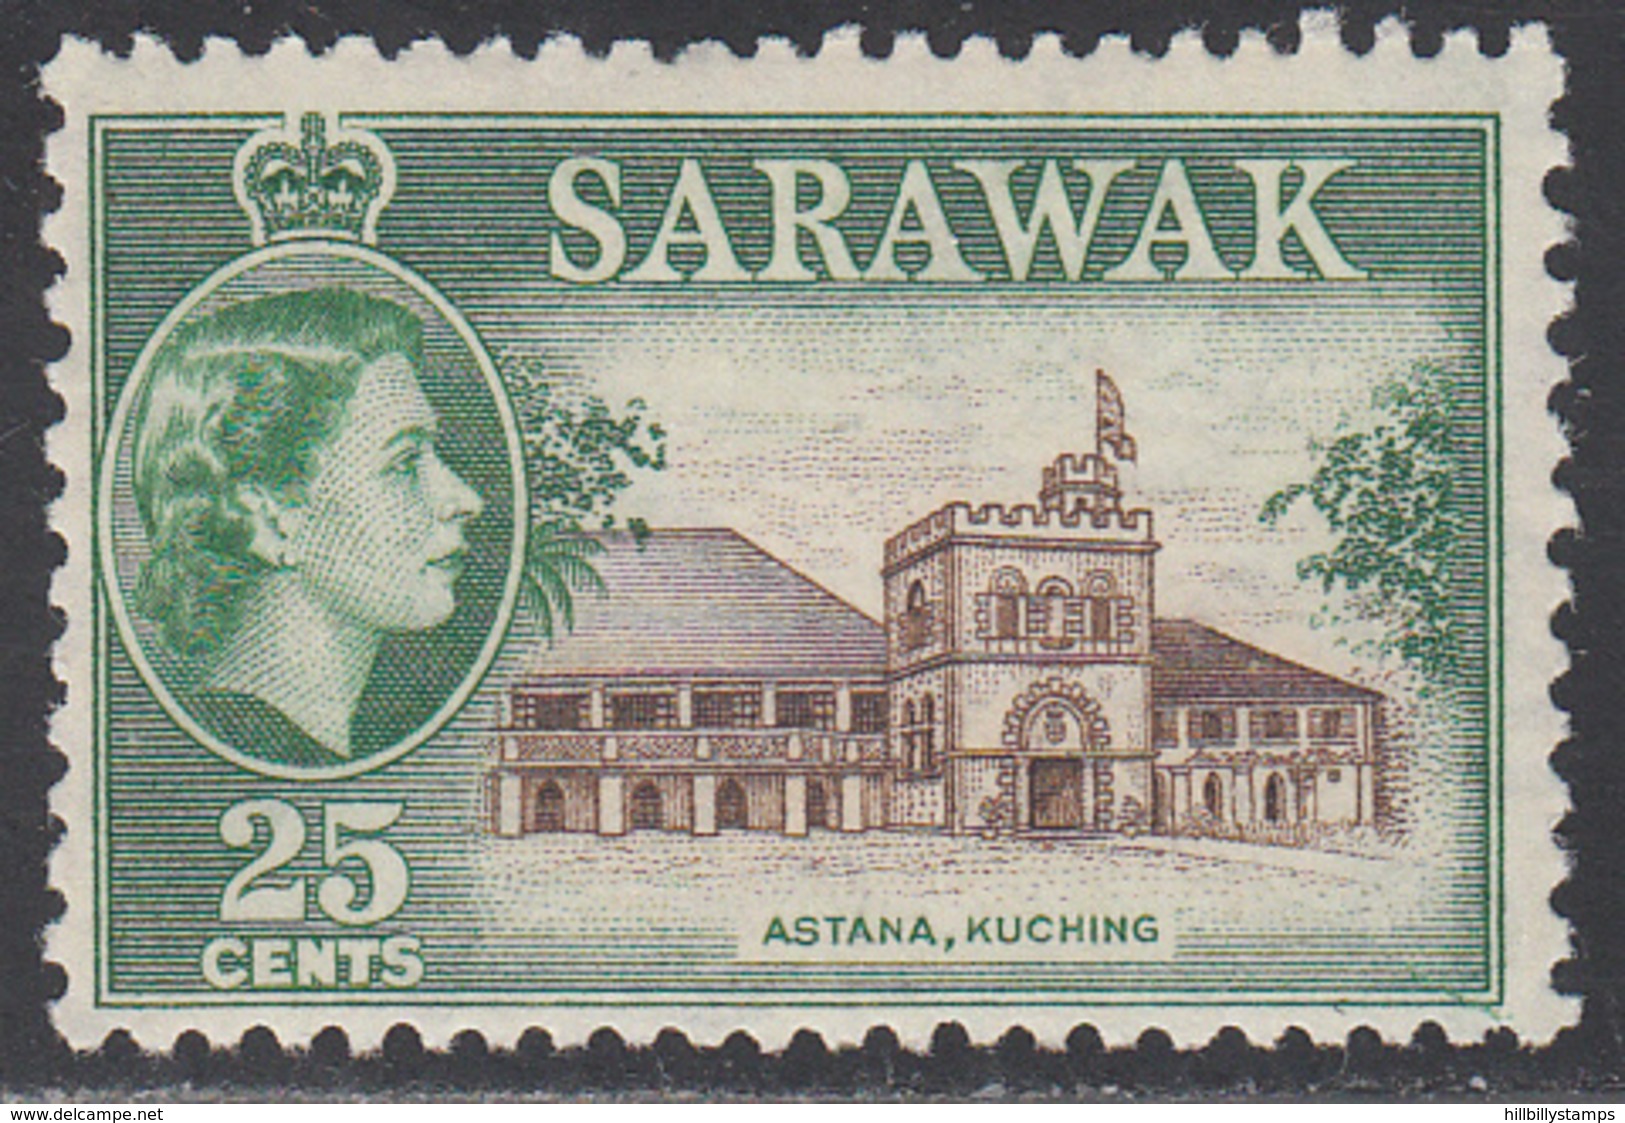 SARAWAK       SCOTT NO. 206     MNH     YEAR 1955 - Sarawak (...-1963)